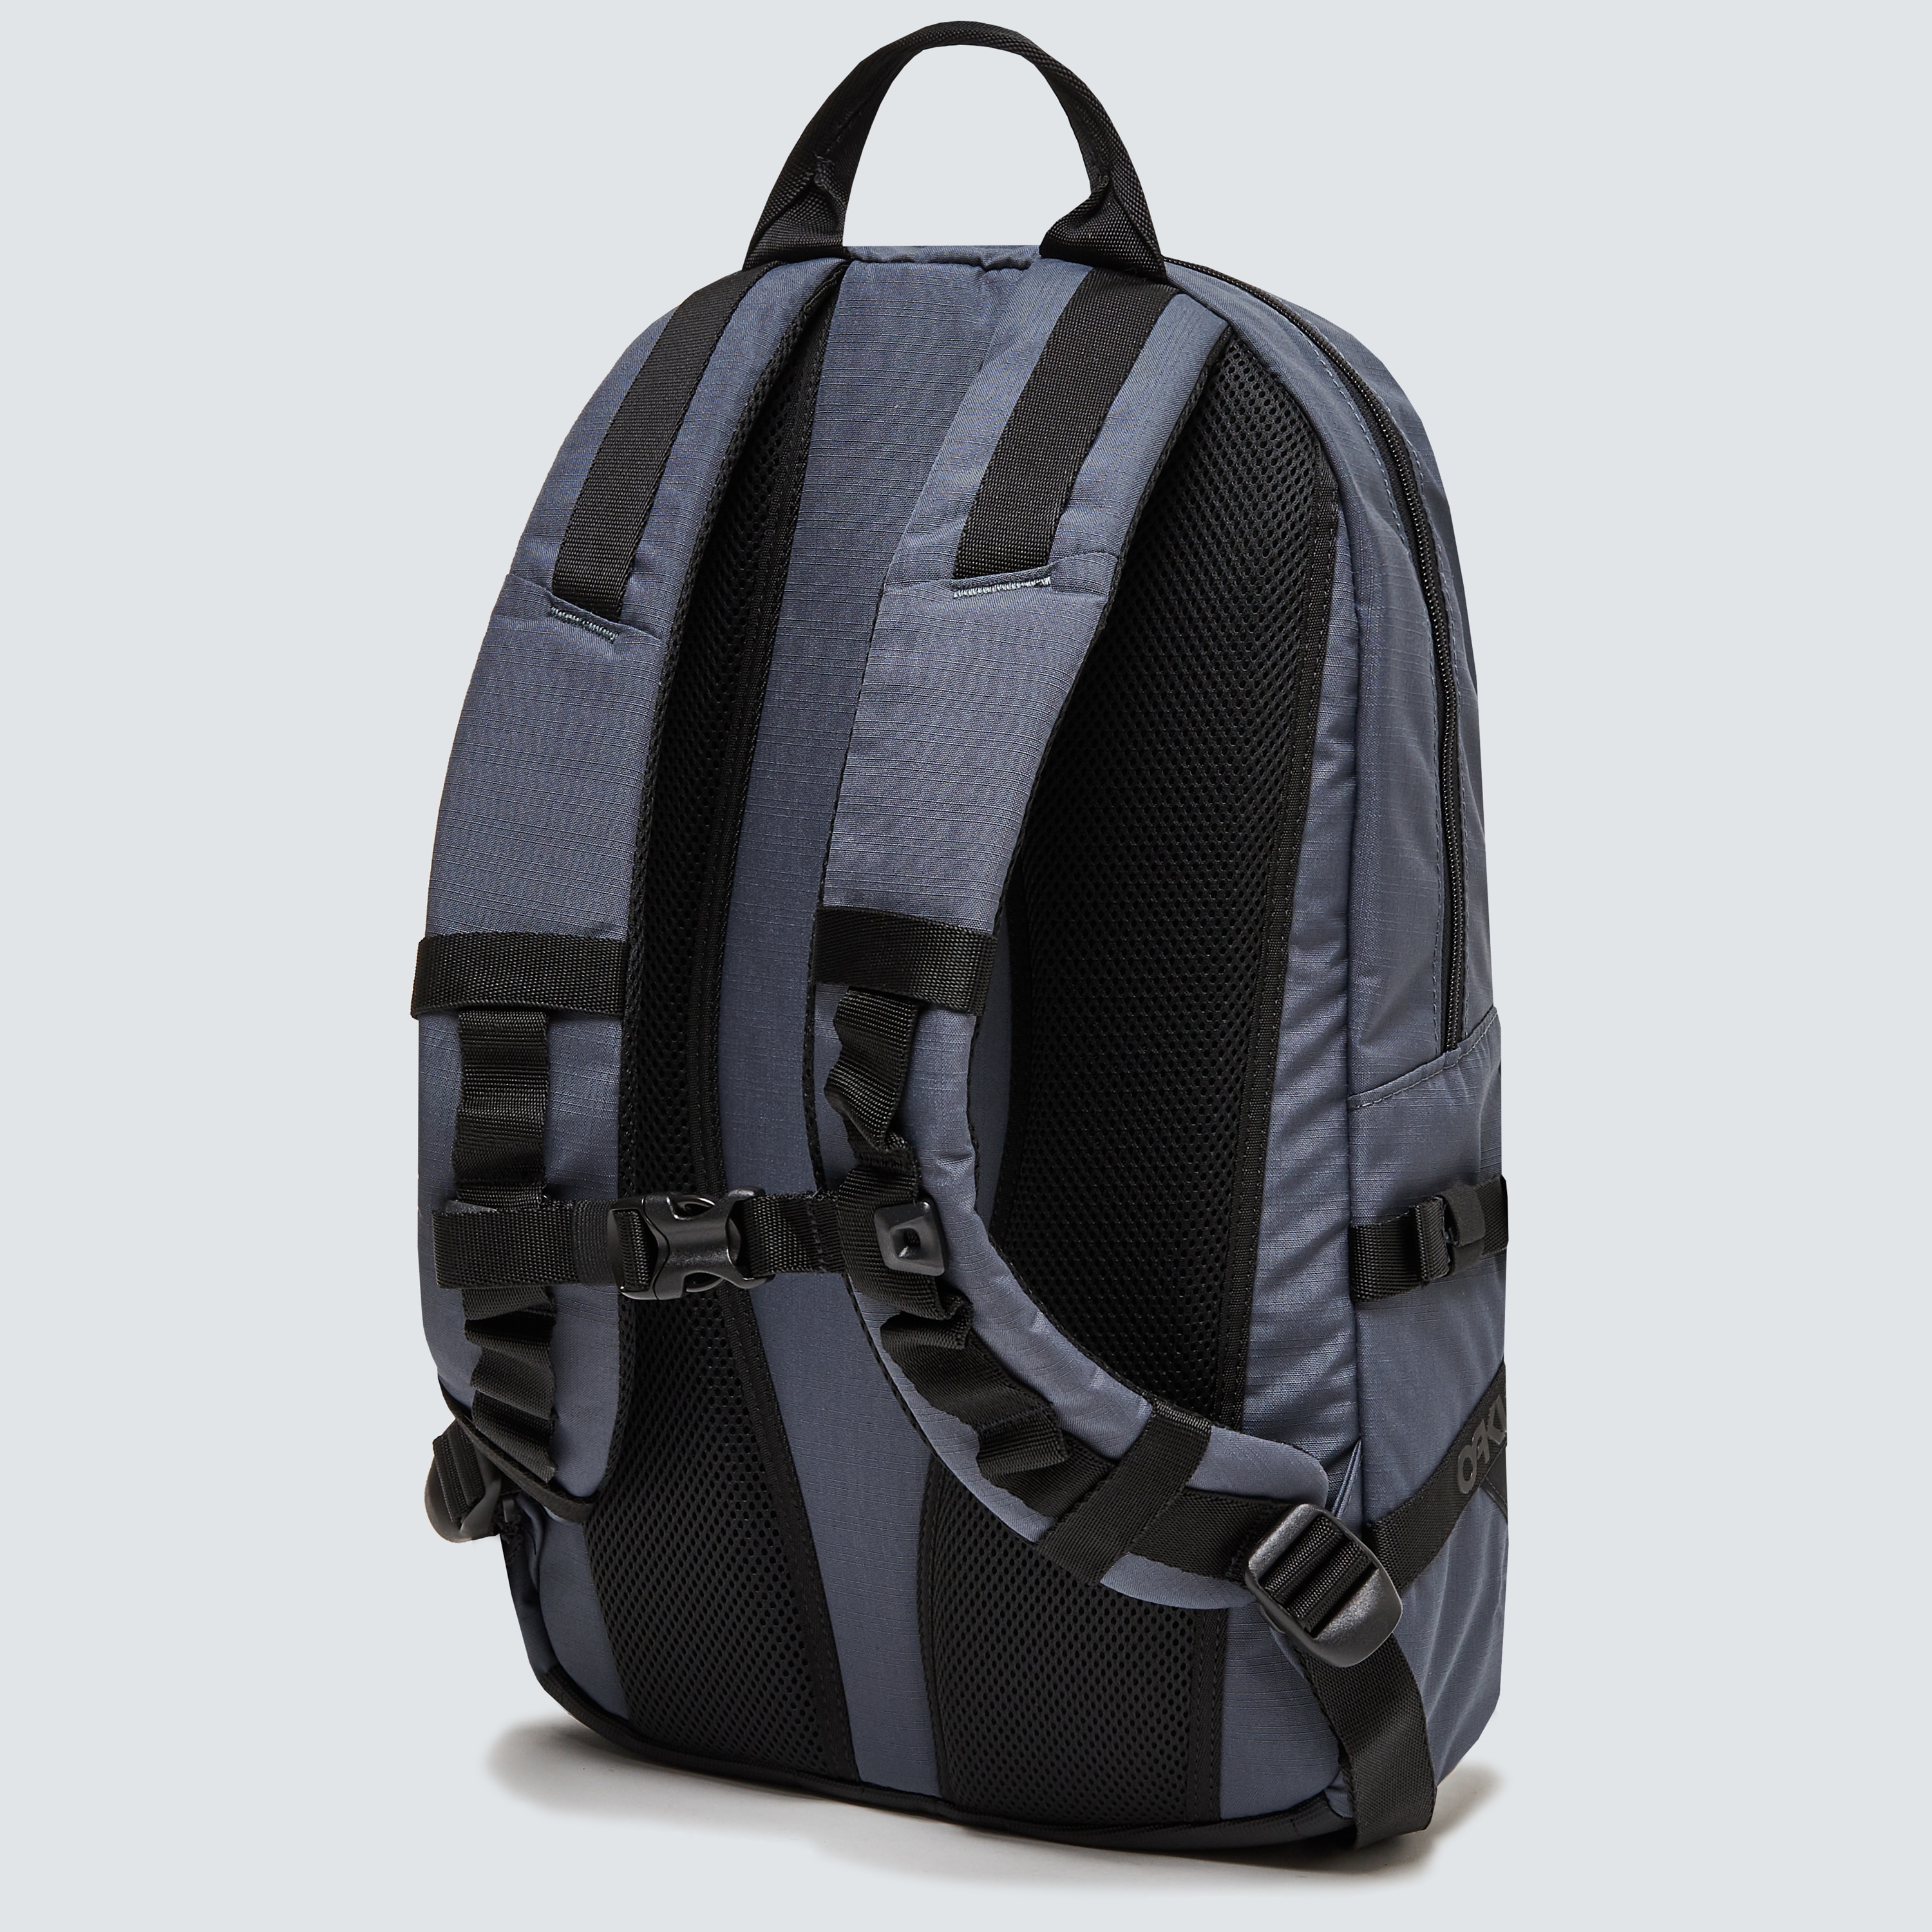 Oakley Street Backpack 2.0 - Uniform Gray - FOS900073-25N | Oakley OSI ...